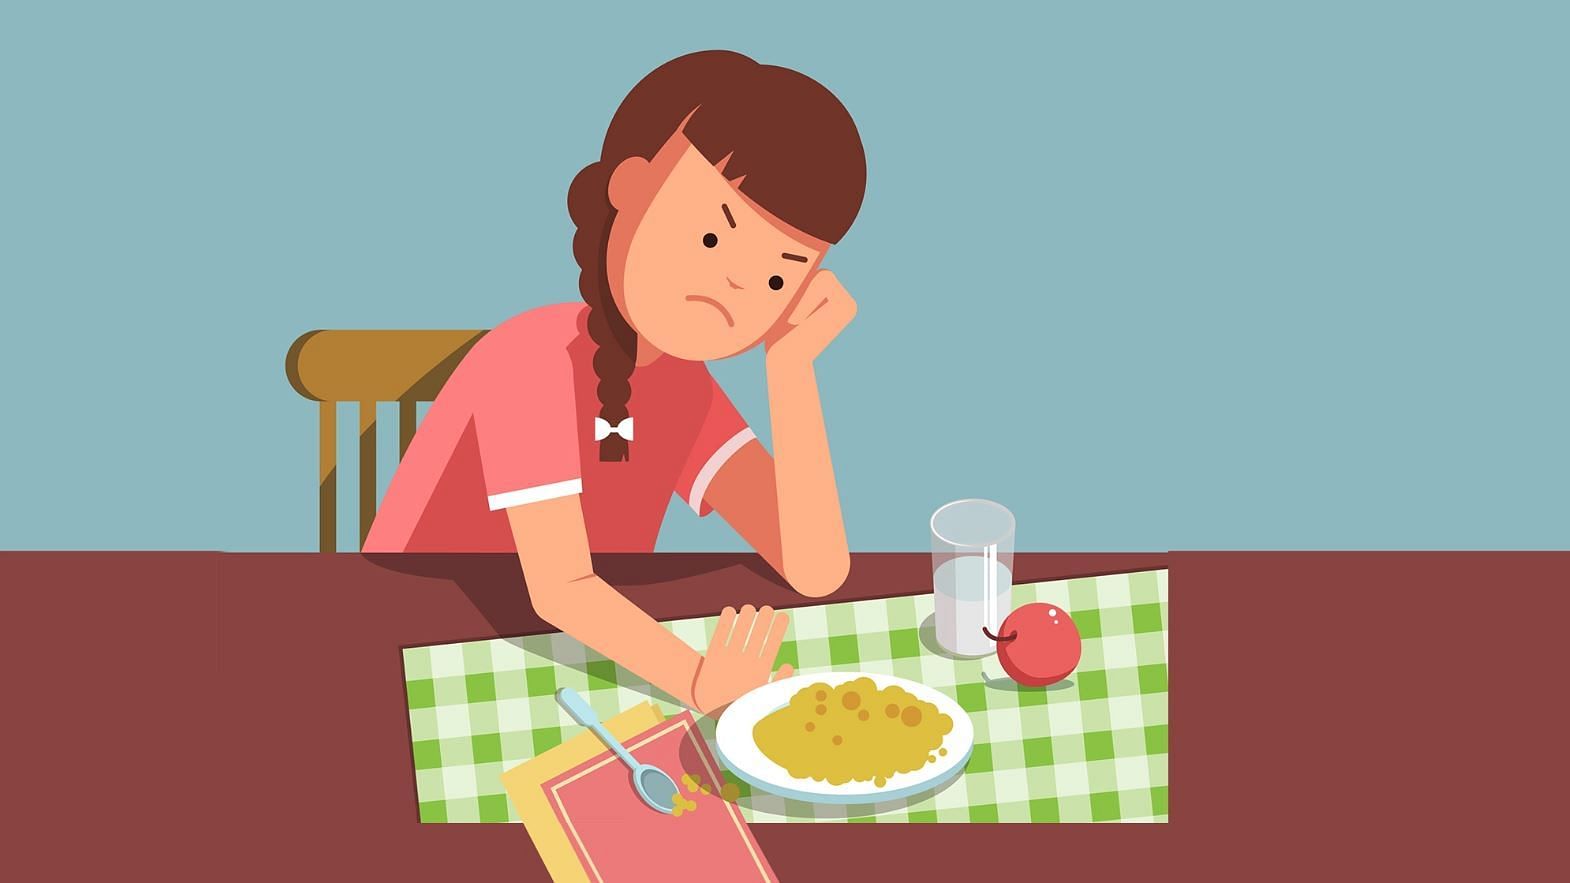 एक स्टडी के मुताबिक सुबह नाश्ता न करना और देर रात में भोजन करना हानिकारक हो सकता है.